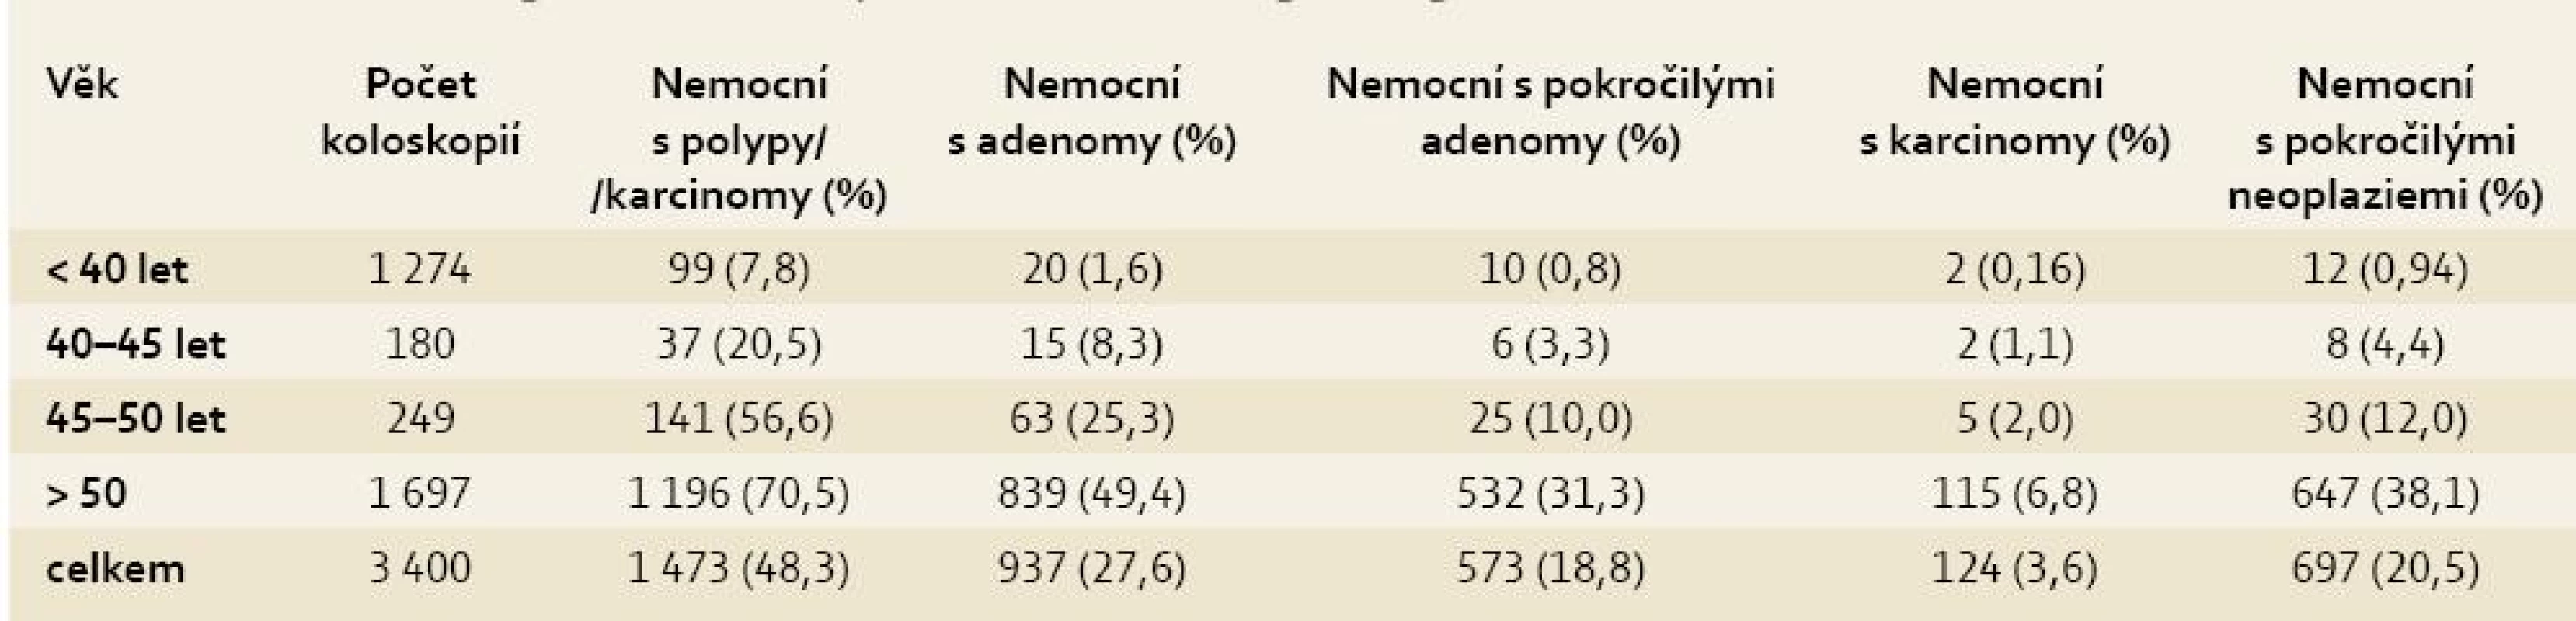 Výskyt neoplazií tlustého střeva v jednotlivých věkových kategoriích.
Tab. 2. Incidence of large intestine neoplasia in individual age categories.